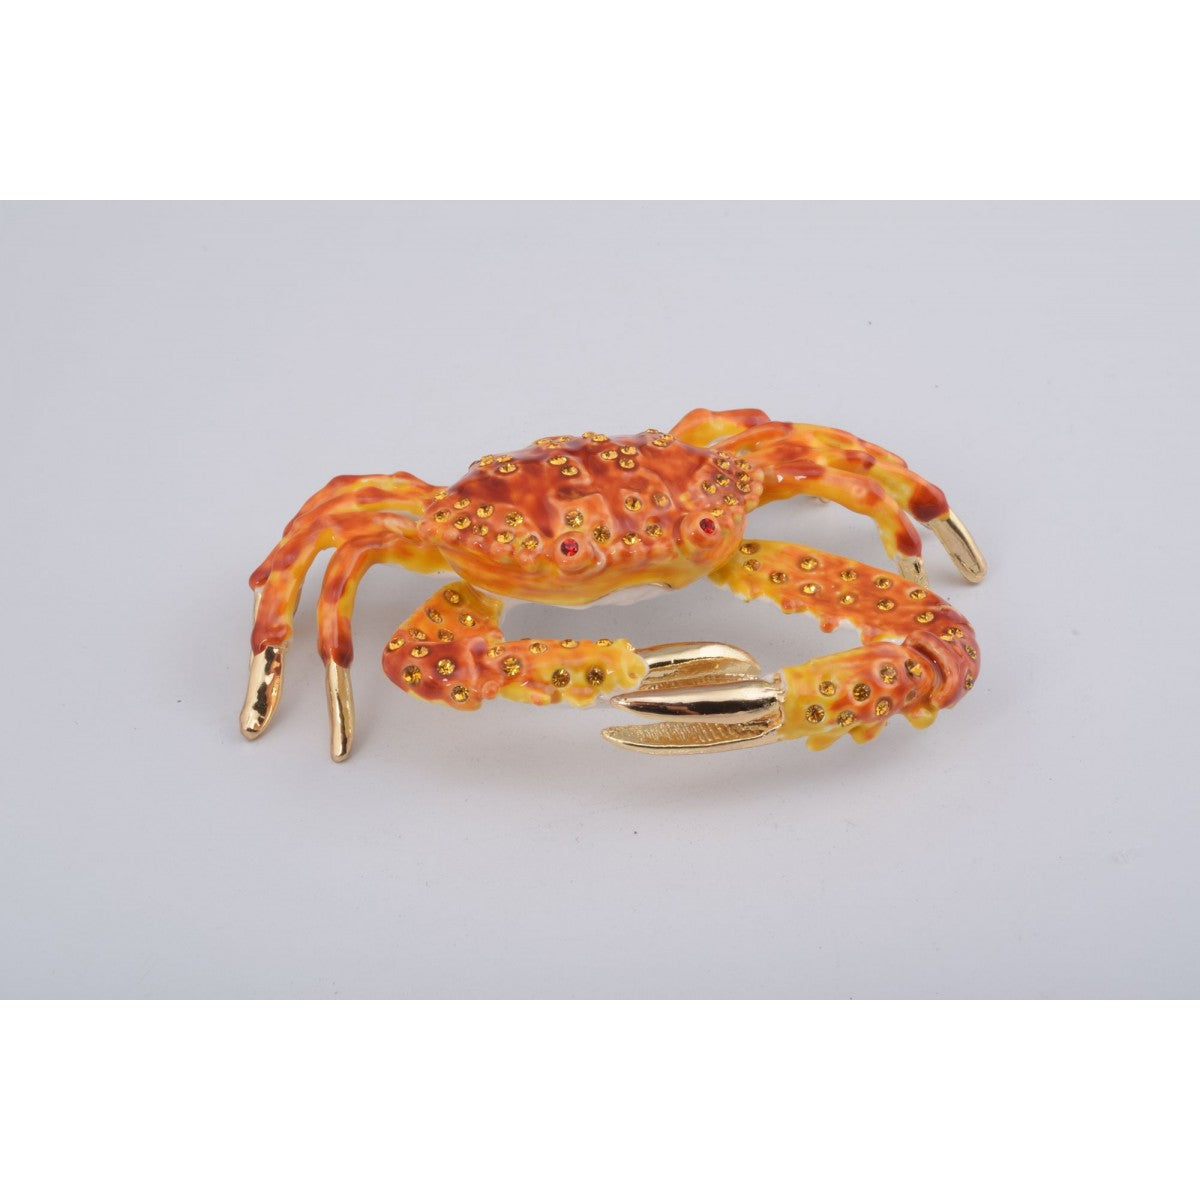 Crab Trinket Box by Keren Kopal